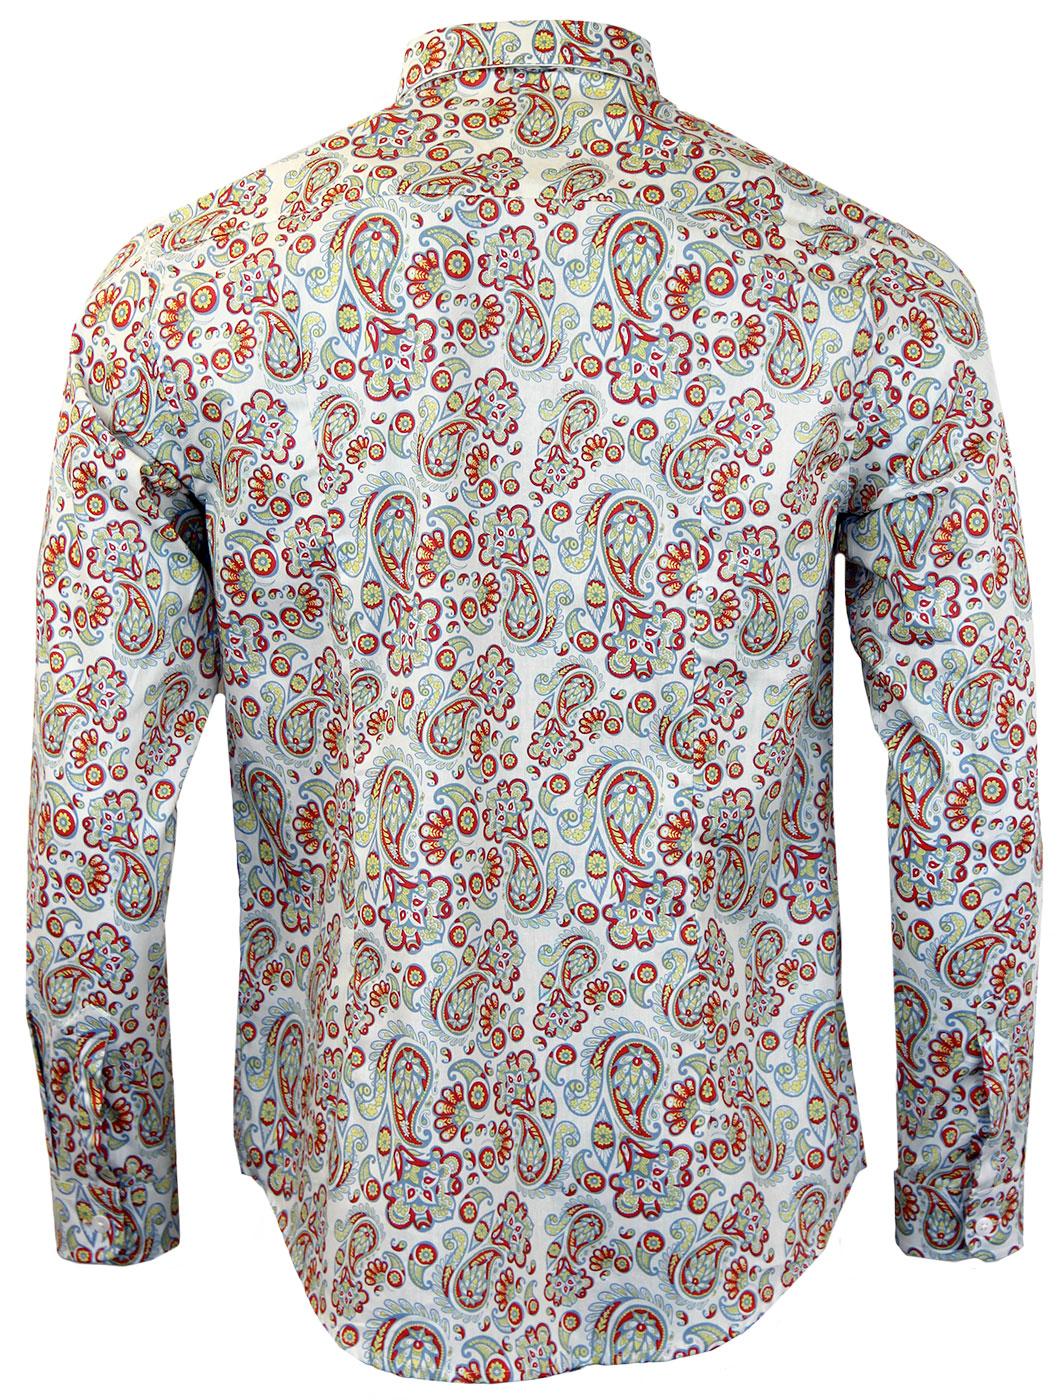 TUKTUK Retro 60s Mod Button Down Paisley Print Shirt in White